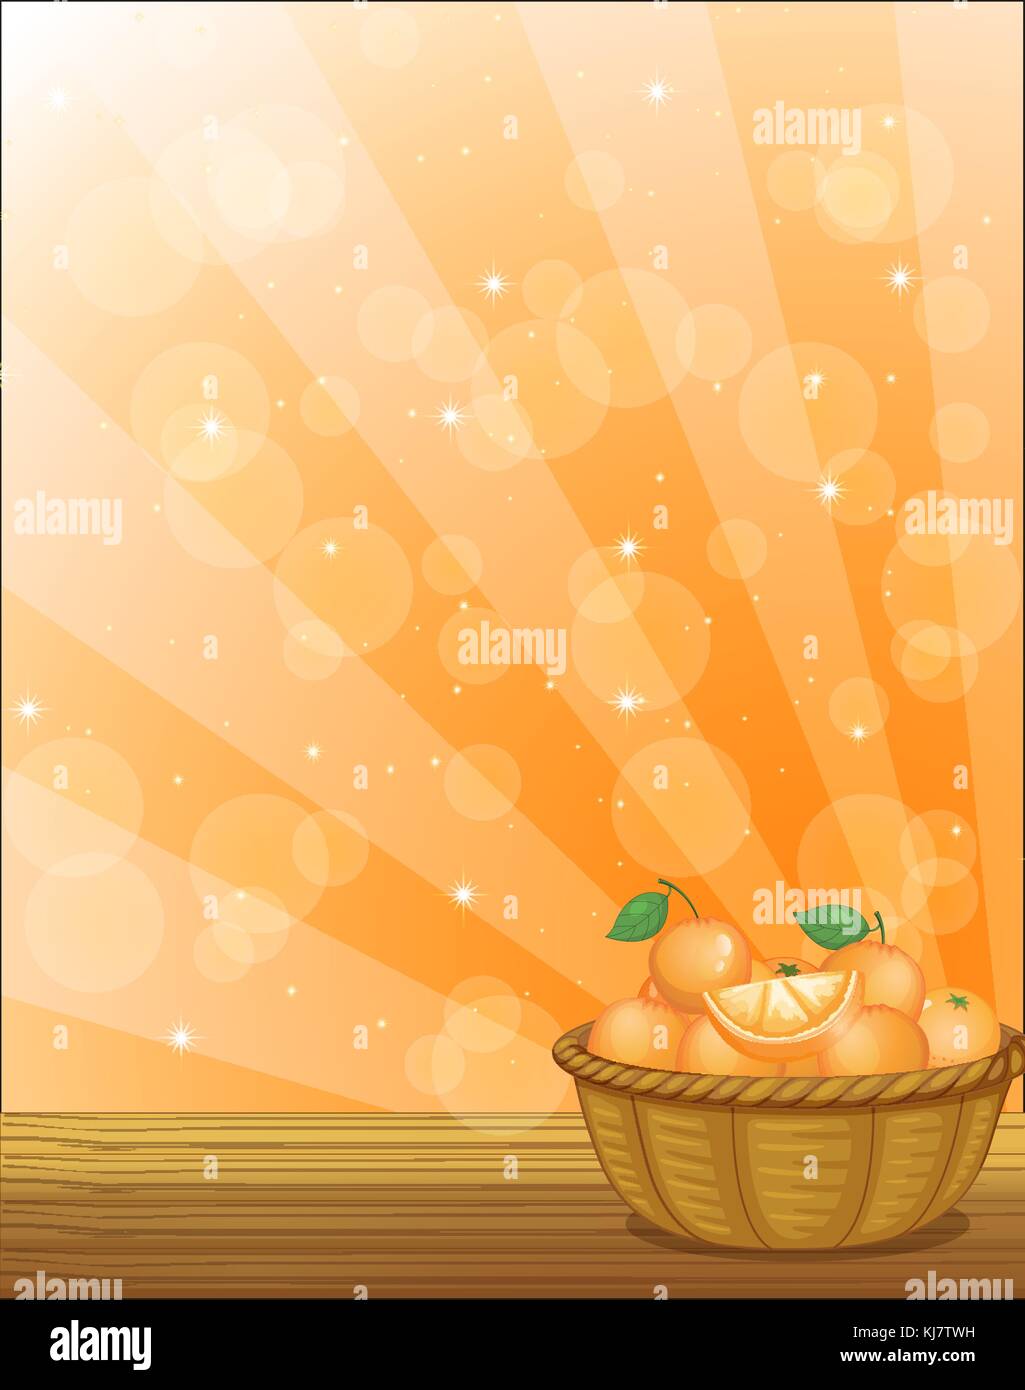 Ilustración de una canasta llena de naranjas Ilustración del Vector